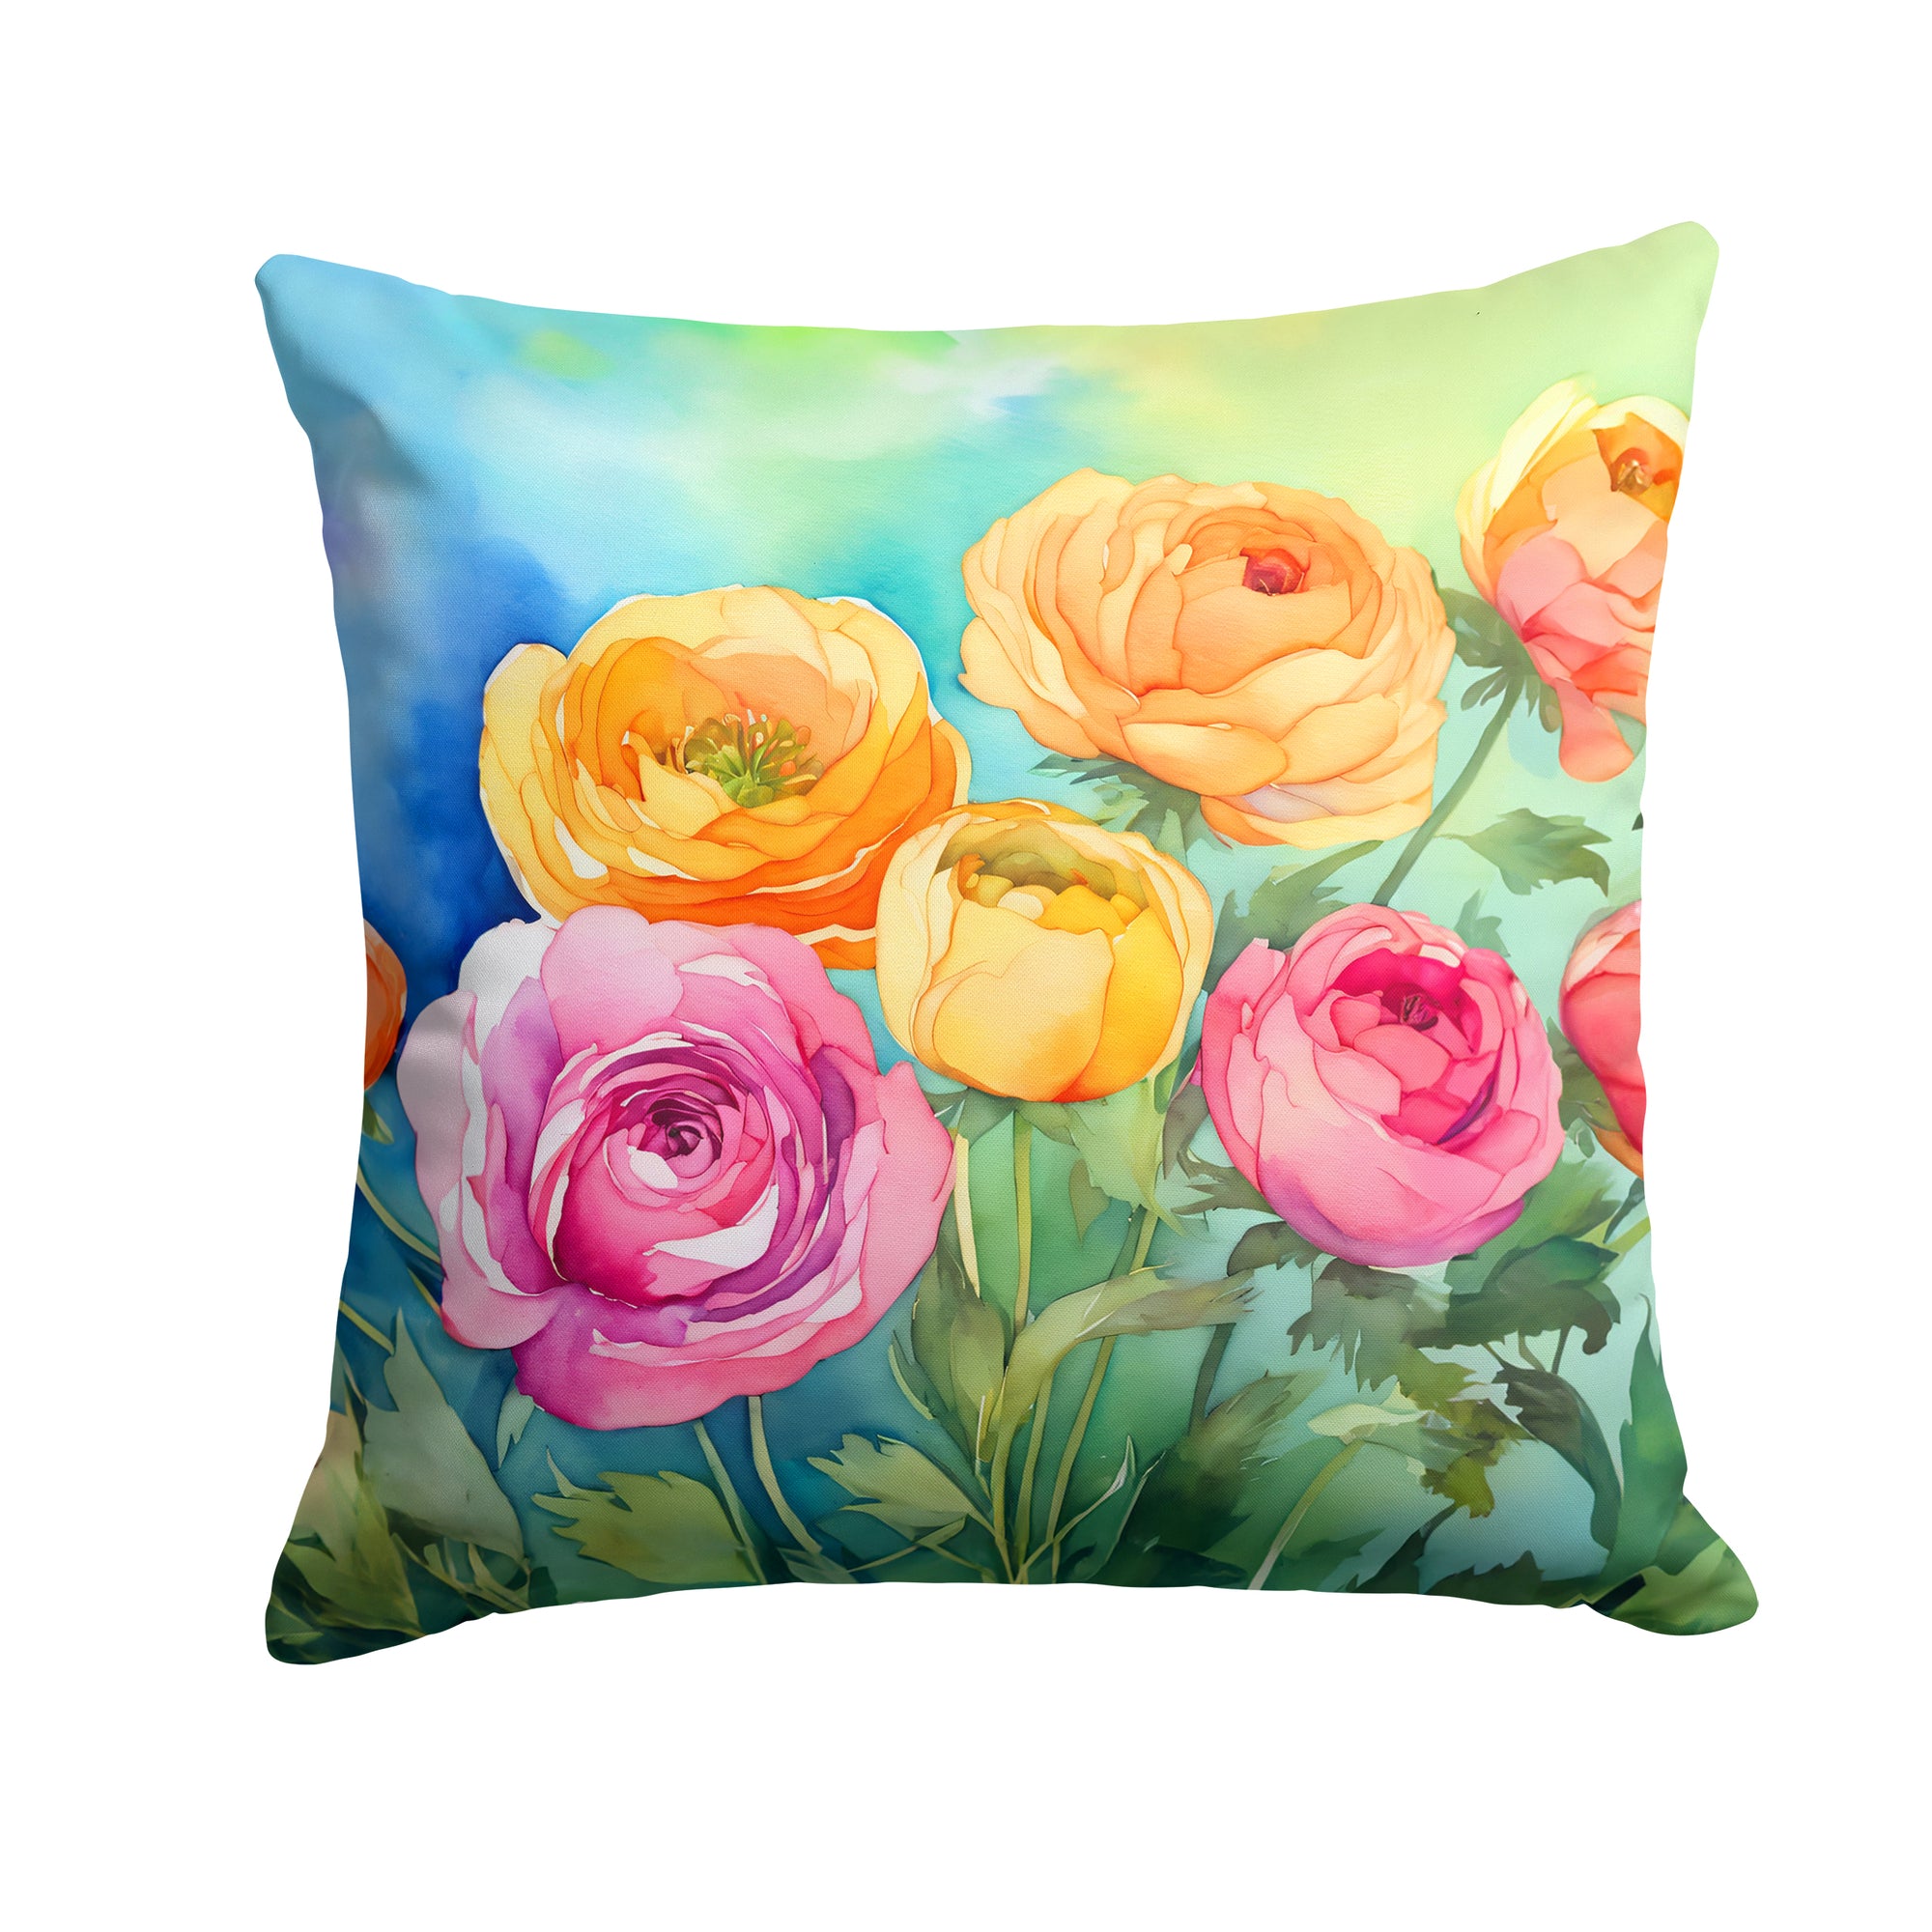 Buy this Ranunculus in Watercolor Throw Pillow